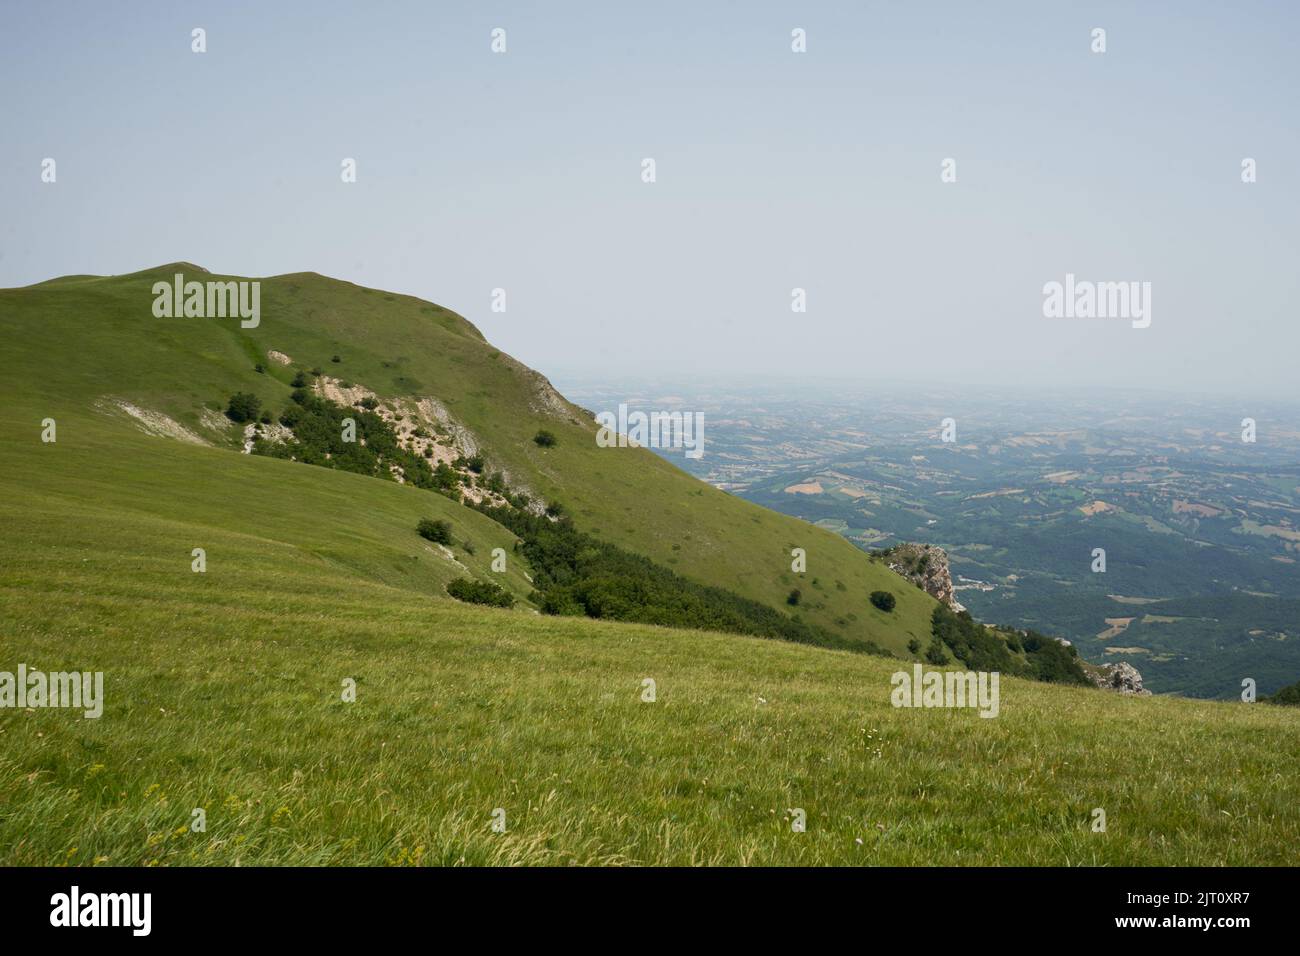 Berglandschaft Piani di Ragnolo, Blick in die Ebene zur Adria, Nationalpark Monti Sibillini, Sibillinsche Berge, Marken, Italien Stock Photo